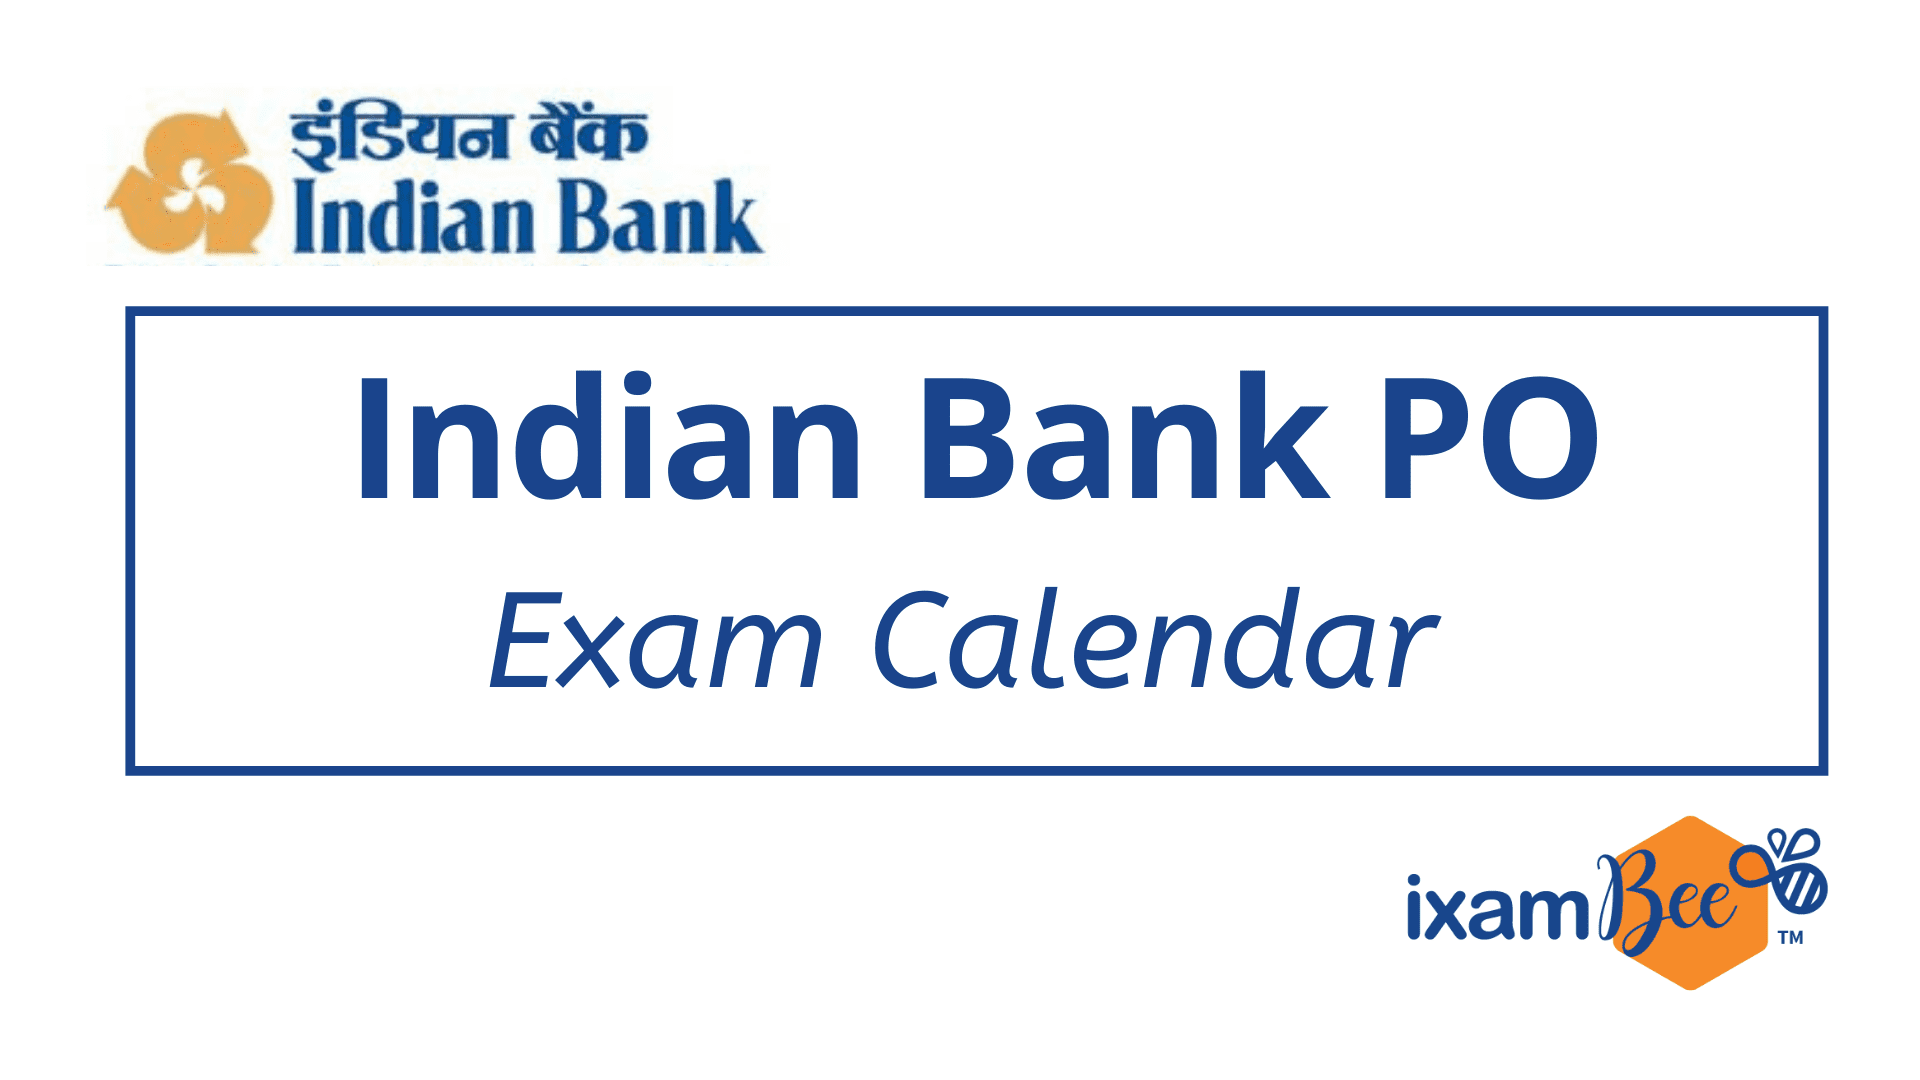 Indian Bank PO Exam Calendar